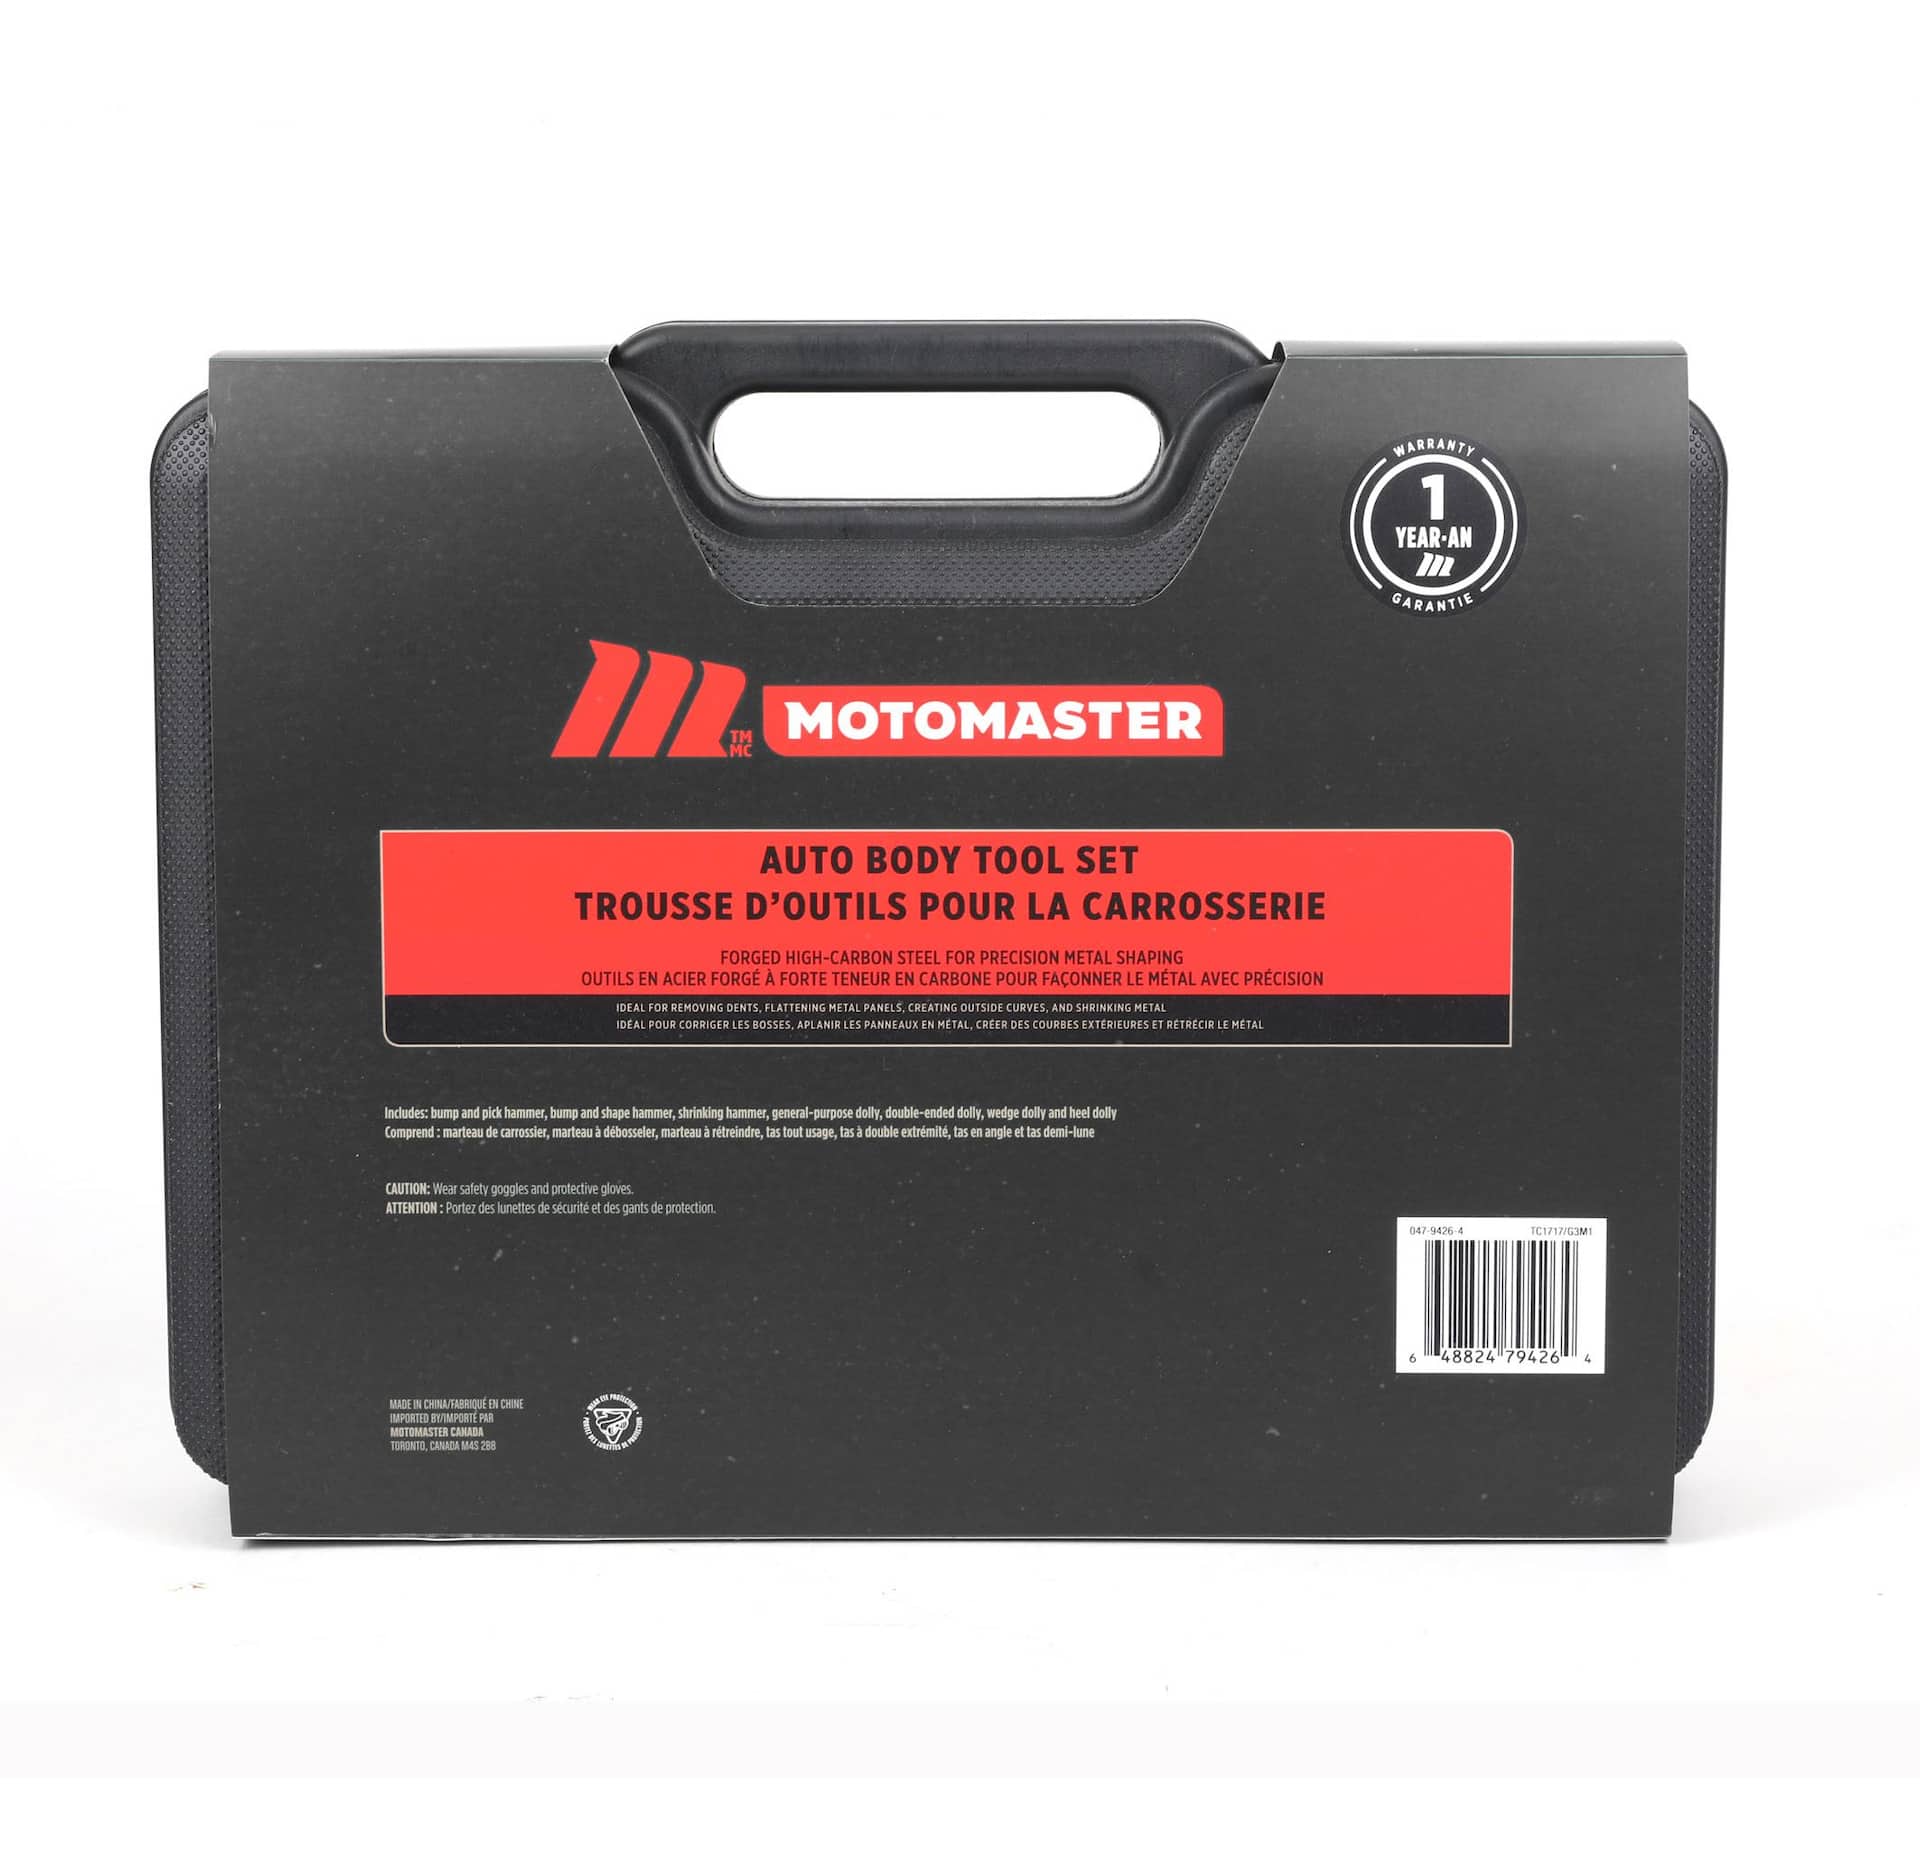 MotoMaster Auto Body Tool Set, 7-pc